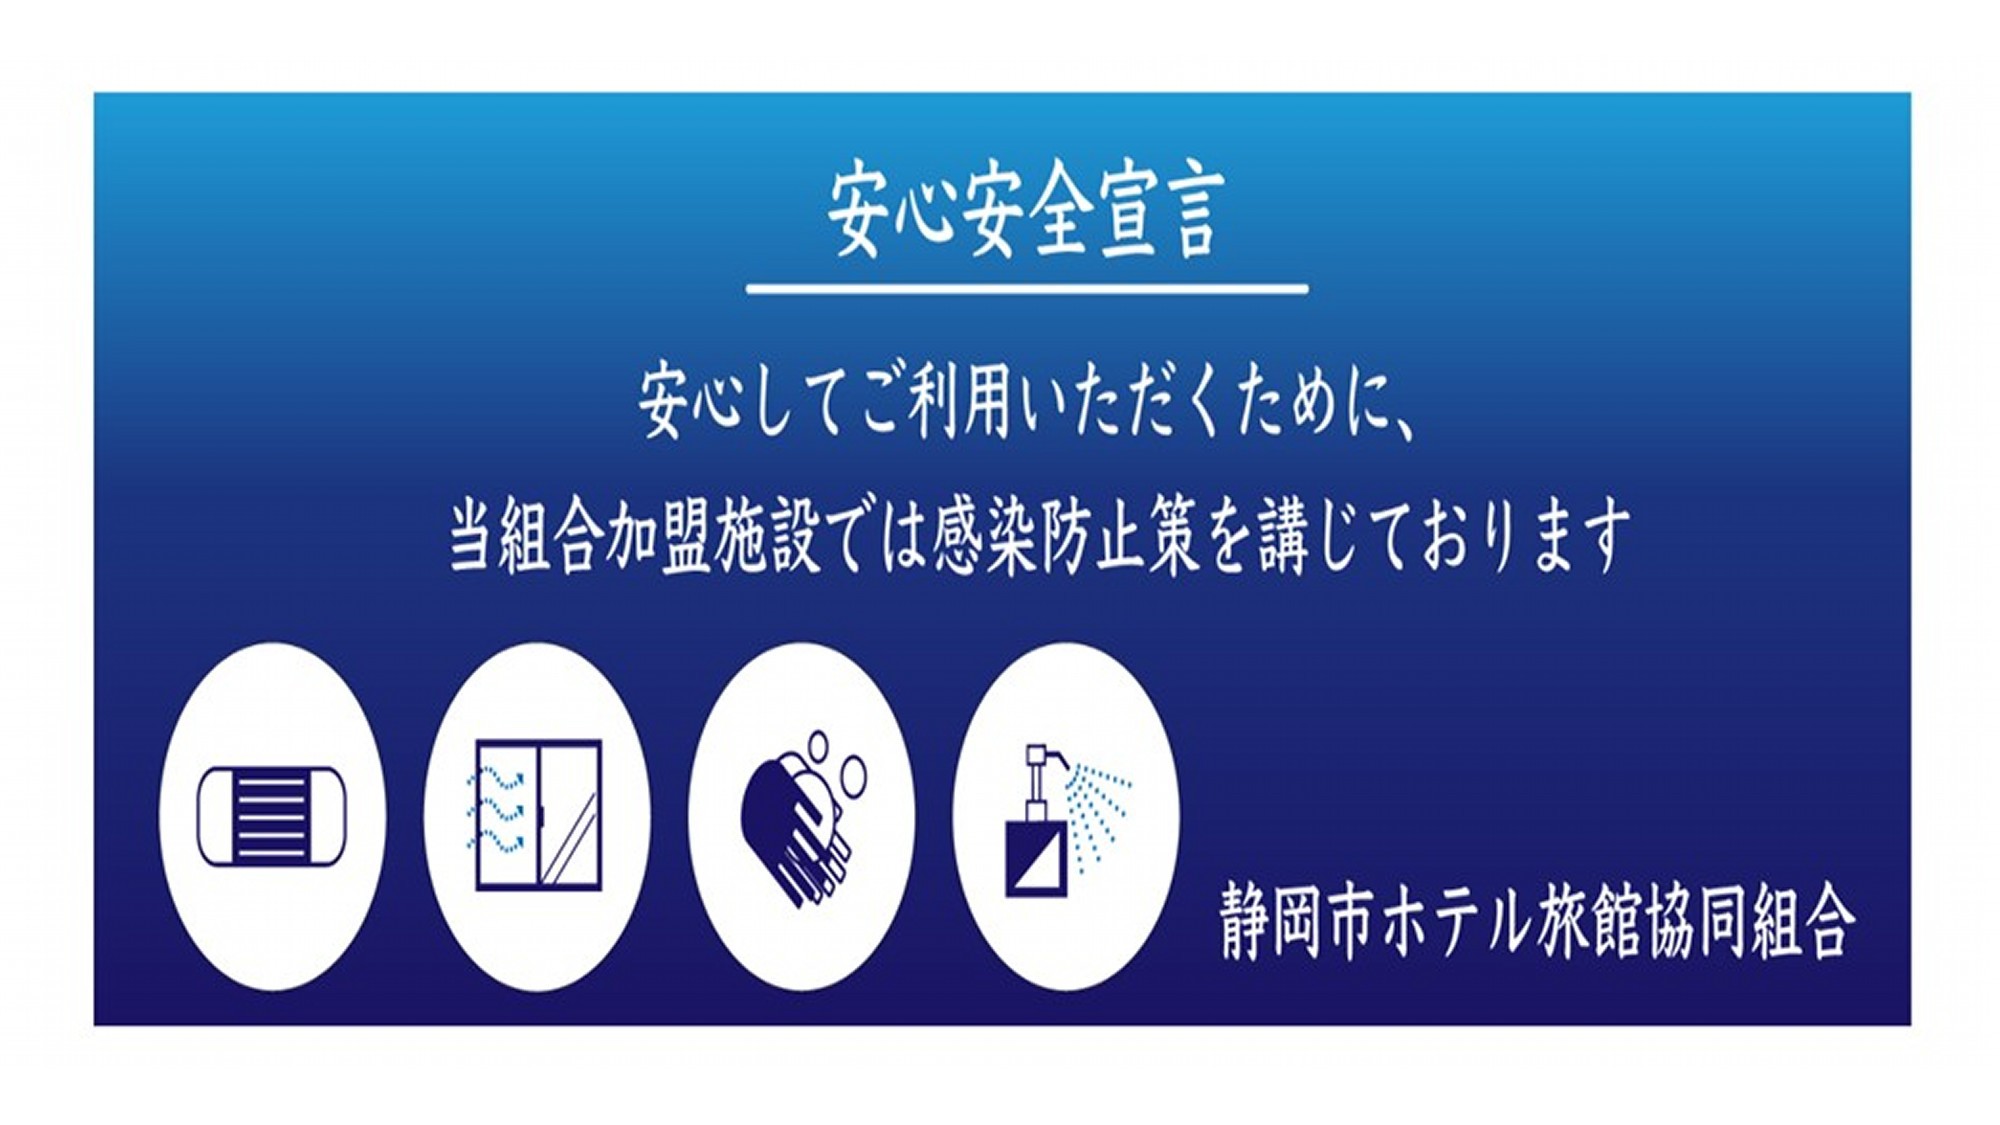 安心安全宣言当組合加盟施設では感染防止策を講じております。静岡市旅館組合